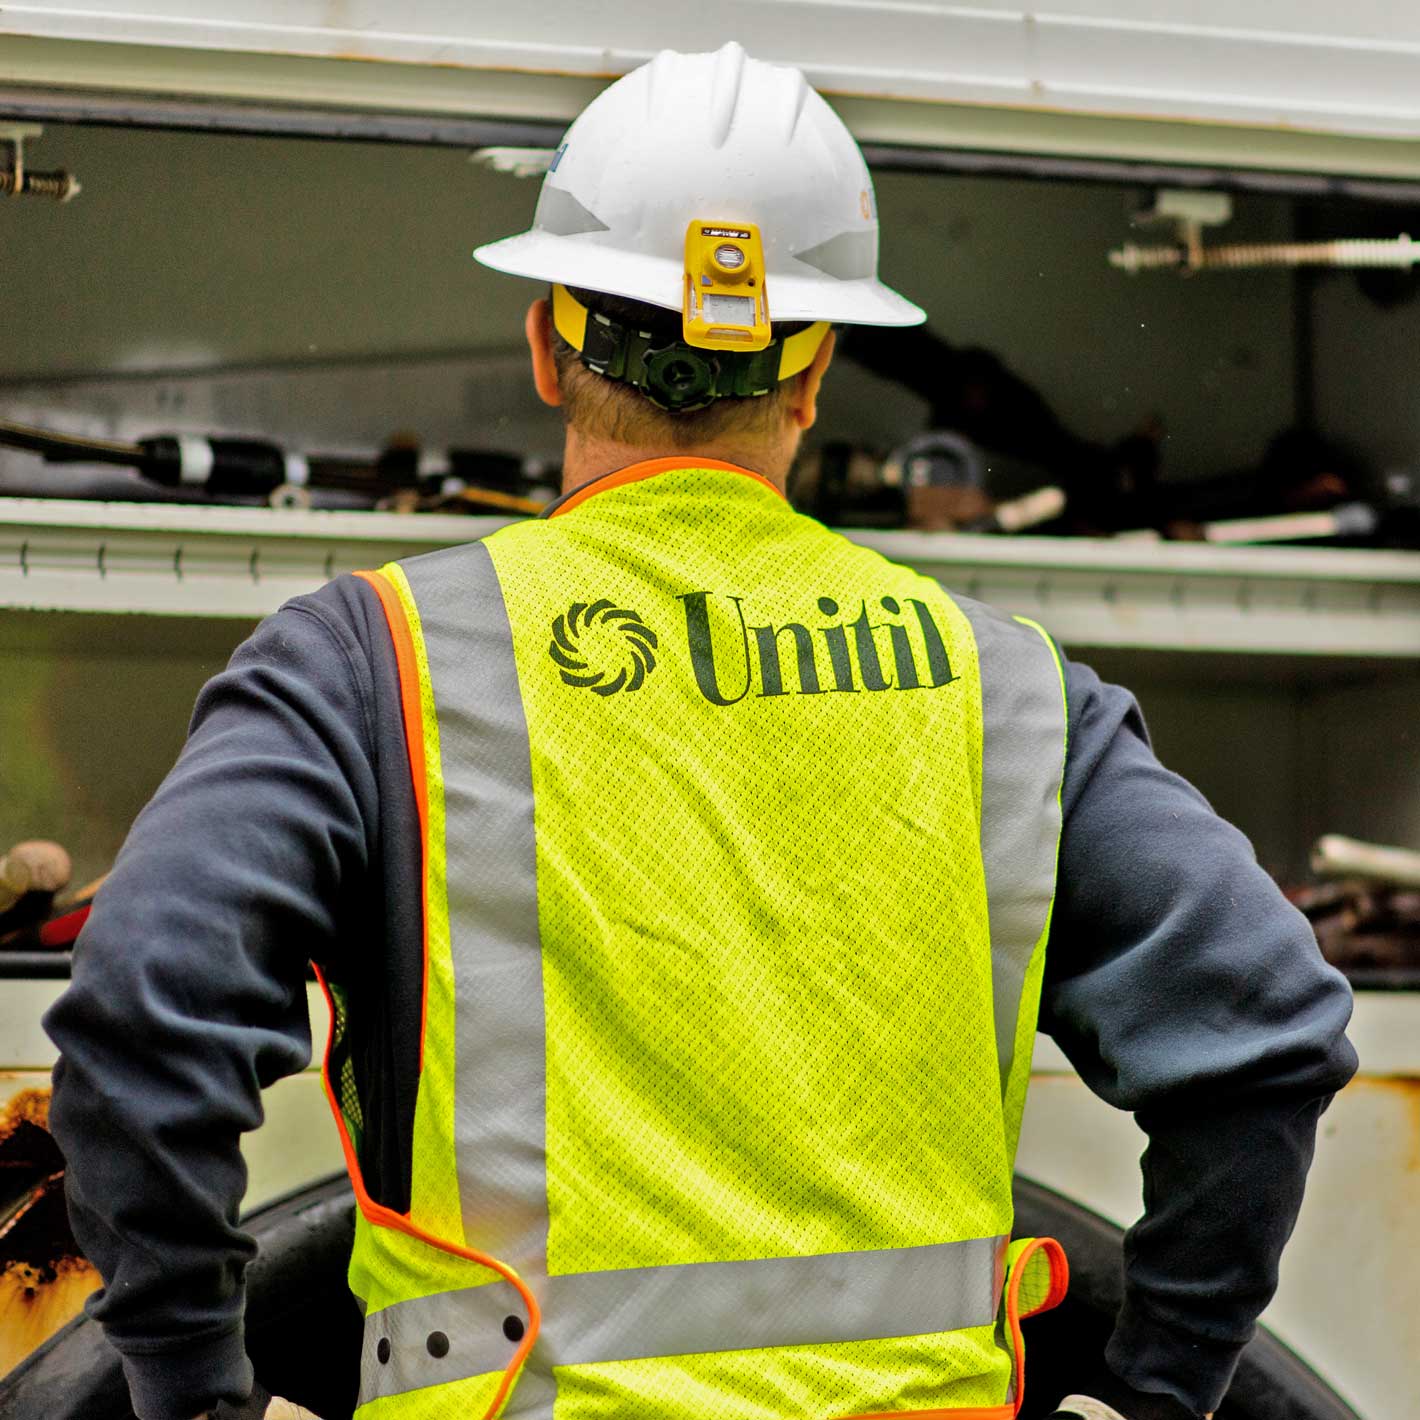 Closeup of Unitil logo on a reflective safety vest.